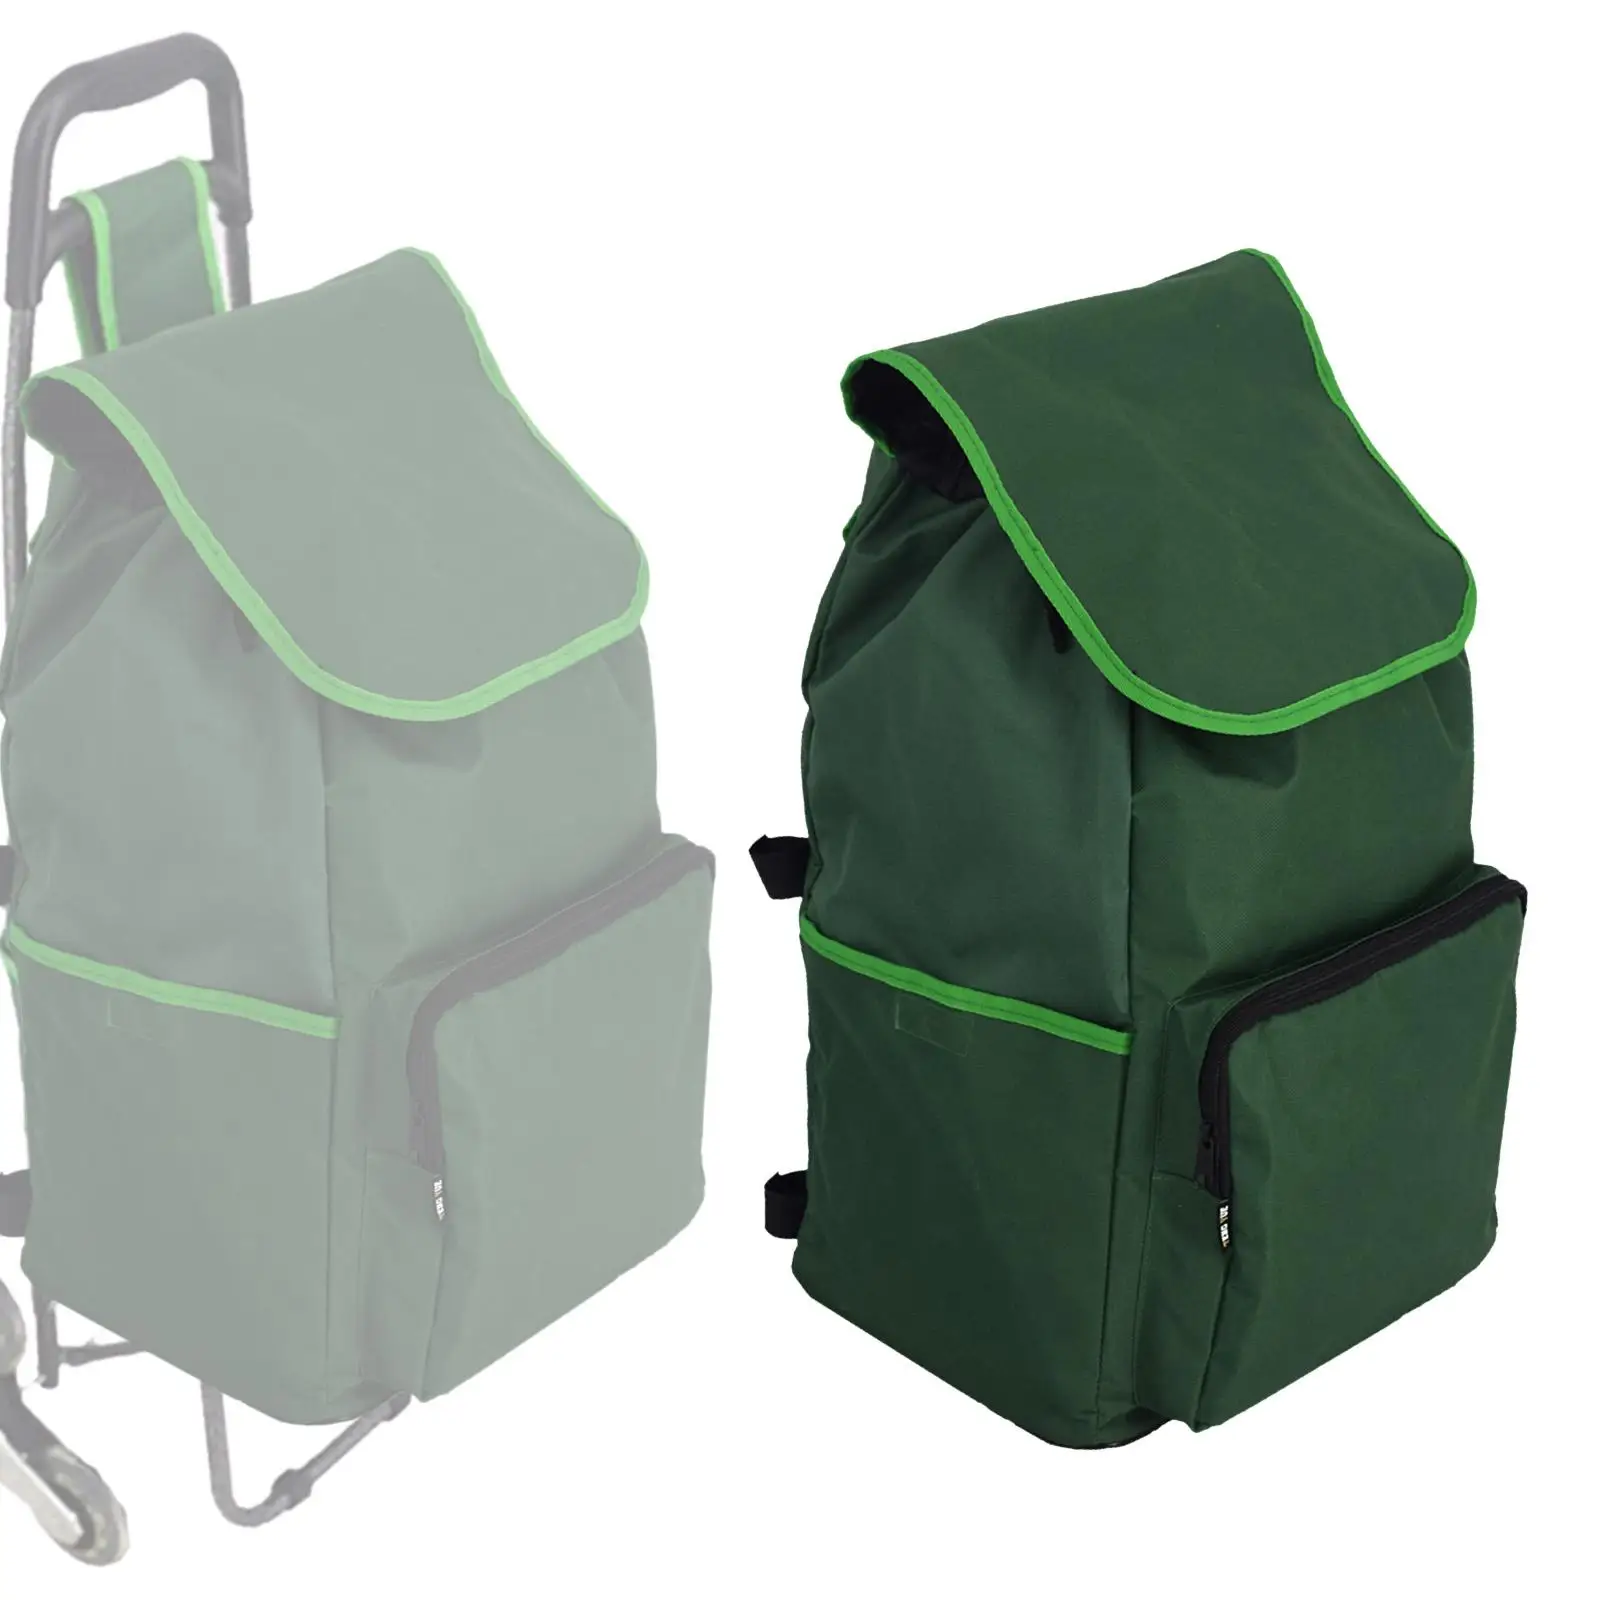 Portable Shopping Cart Bag Reusable Shopping Spare Bag for Utility Cart